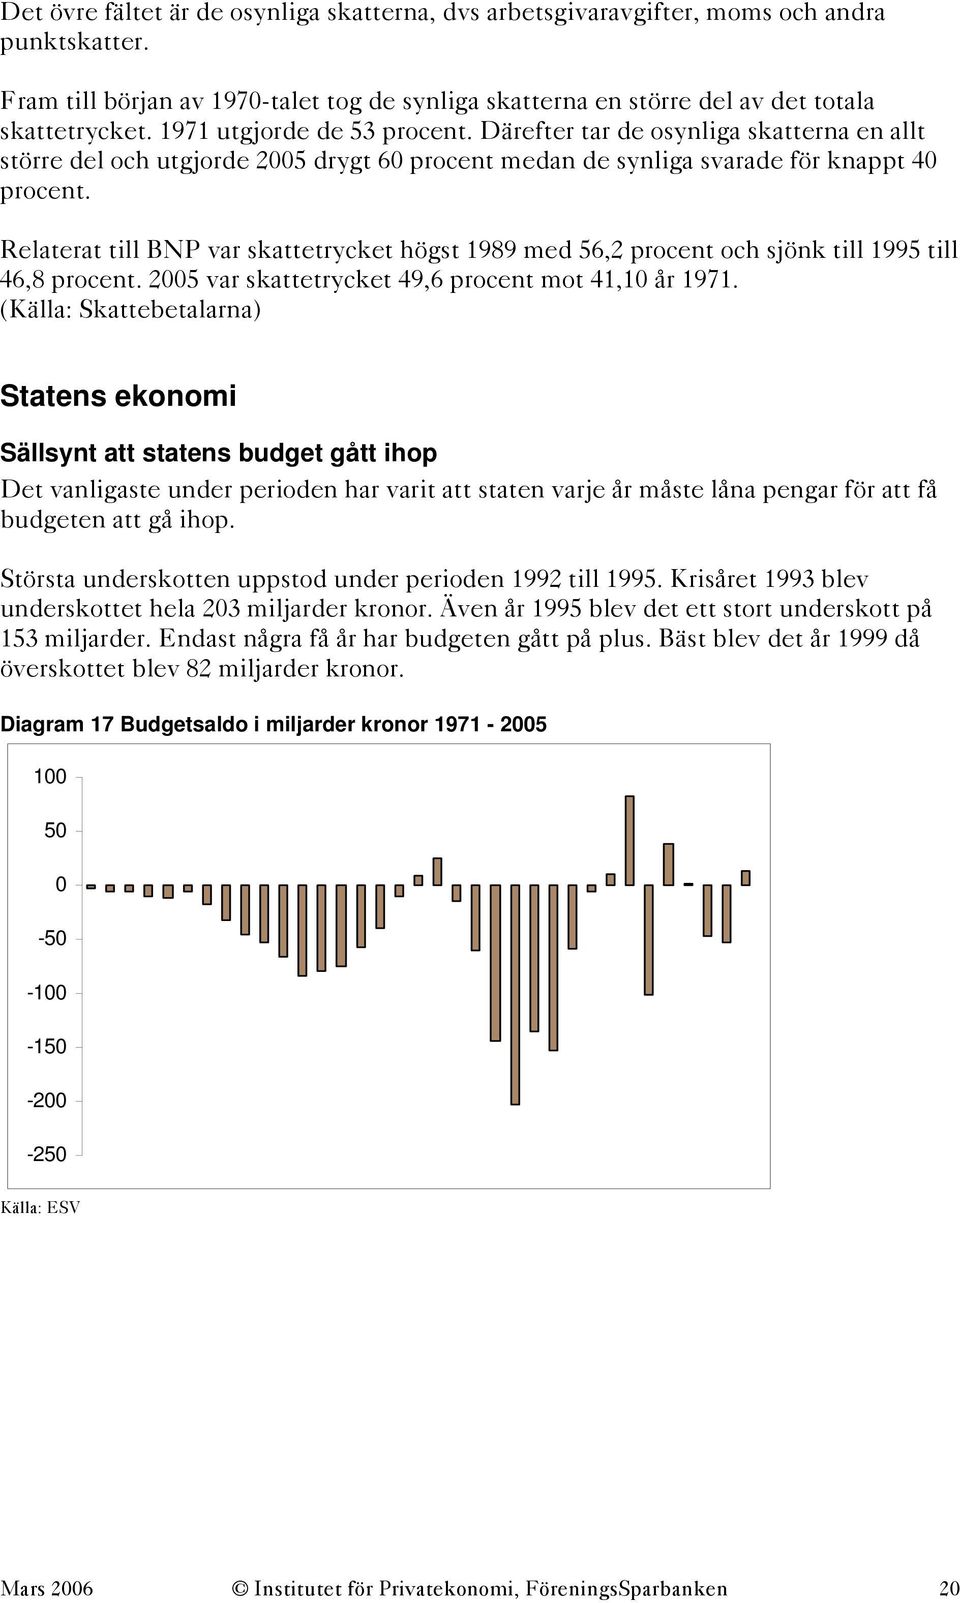 Relaterat till BNP var skattetrycket högst 1989 med 56,2 procent och sjönk till 1995 till 46,8 procent. 25 var skattetrycket 49,6 procent mot 41,1 år 1971.